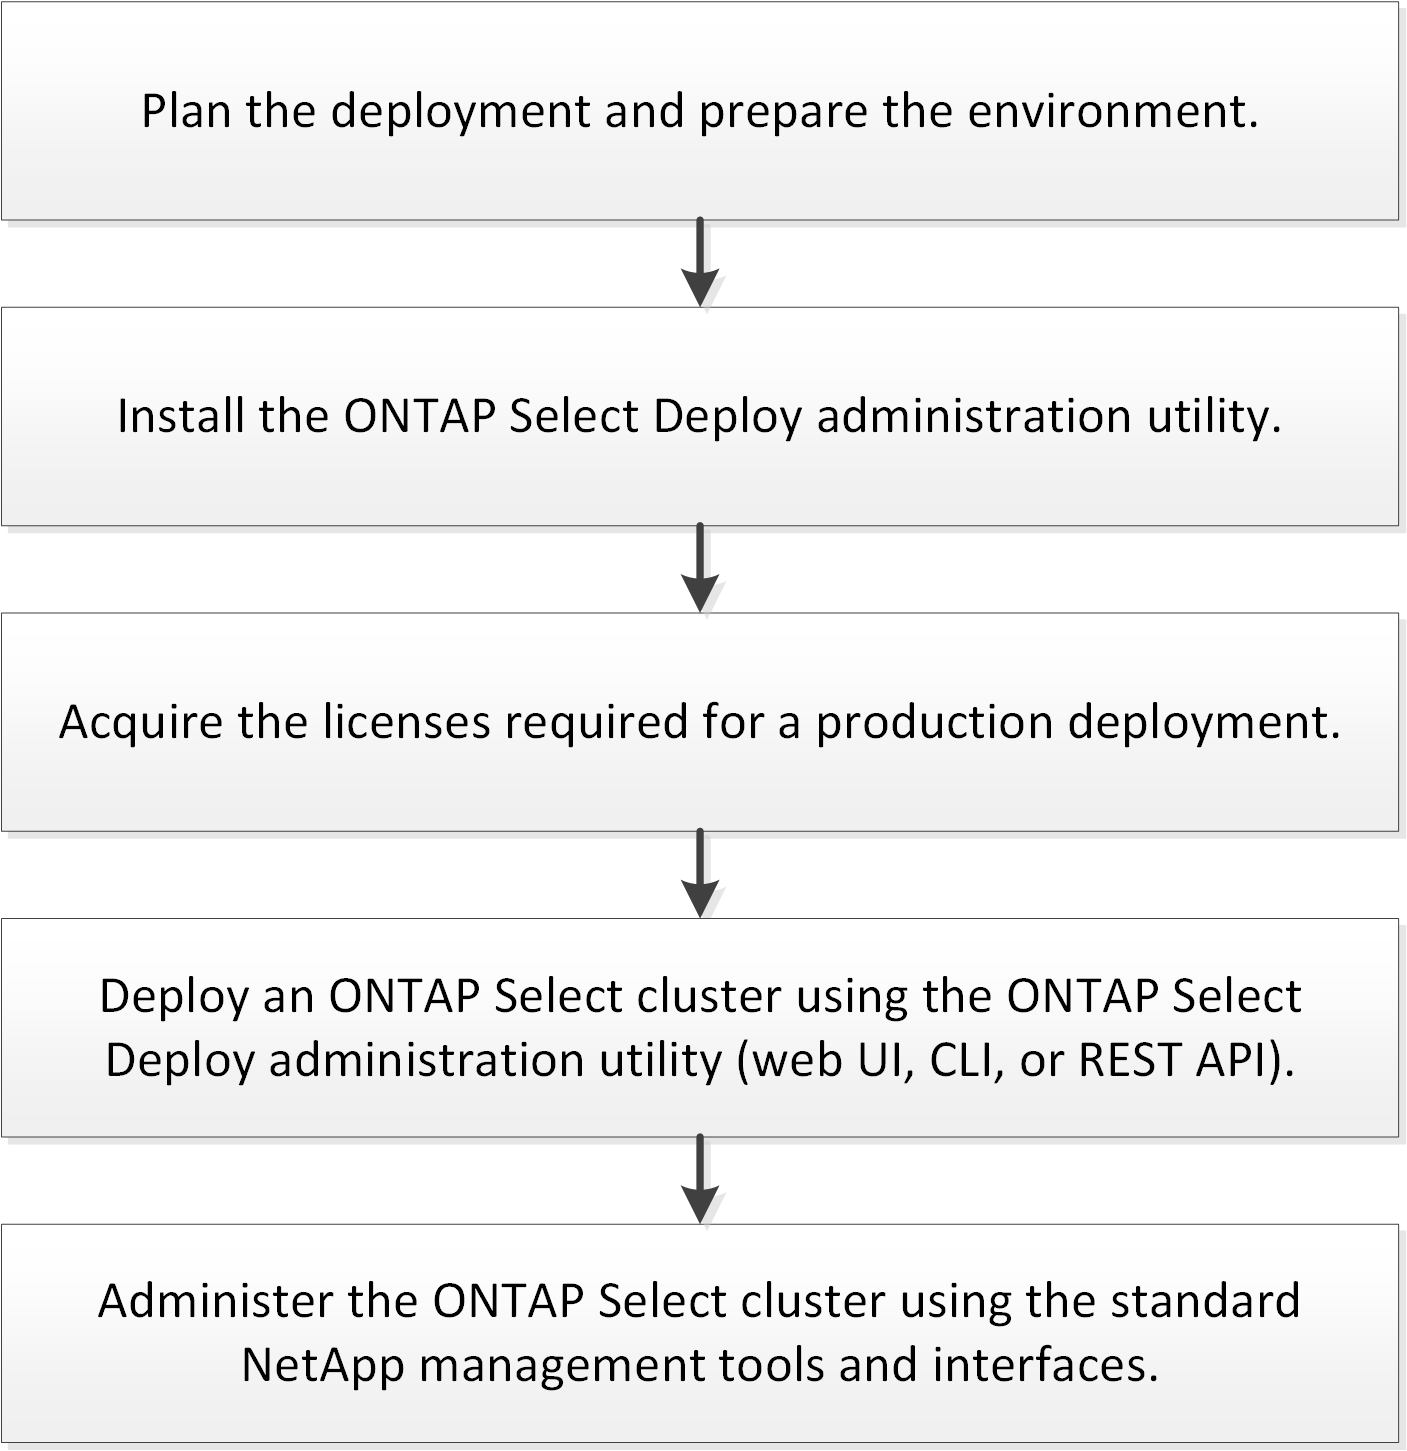 에서는 ONTAP Select 클러스터를 구축하는 데 필요한 전체 워크플로우를 설명합니다.